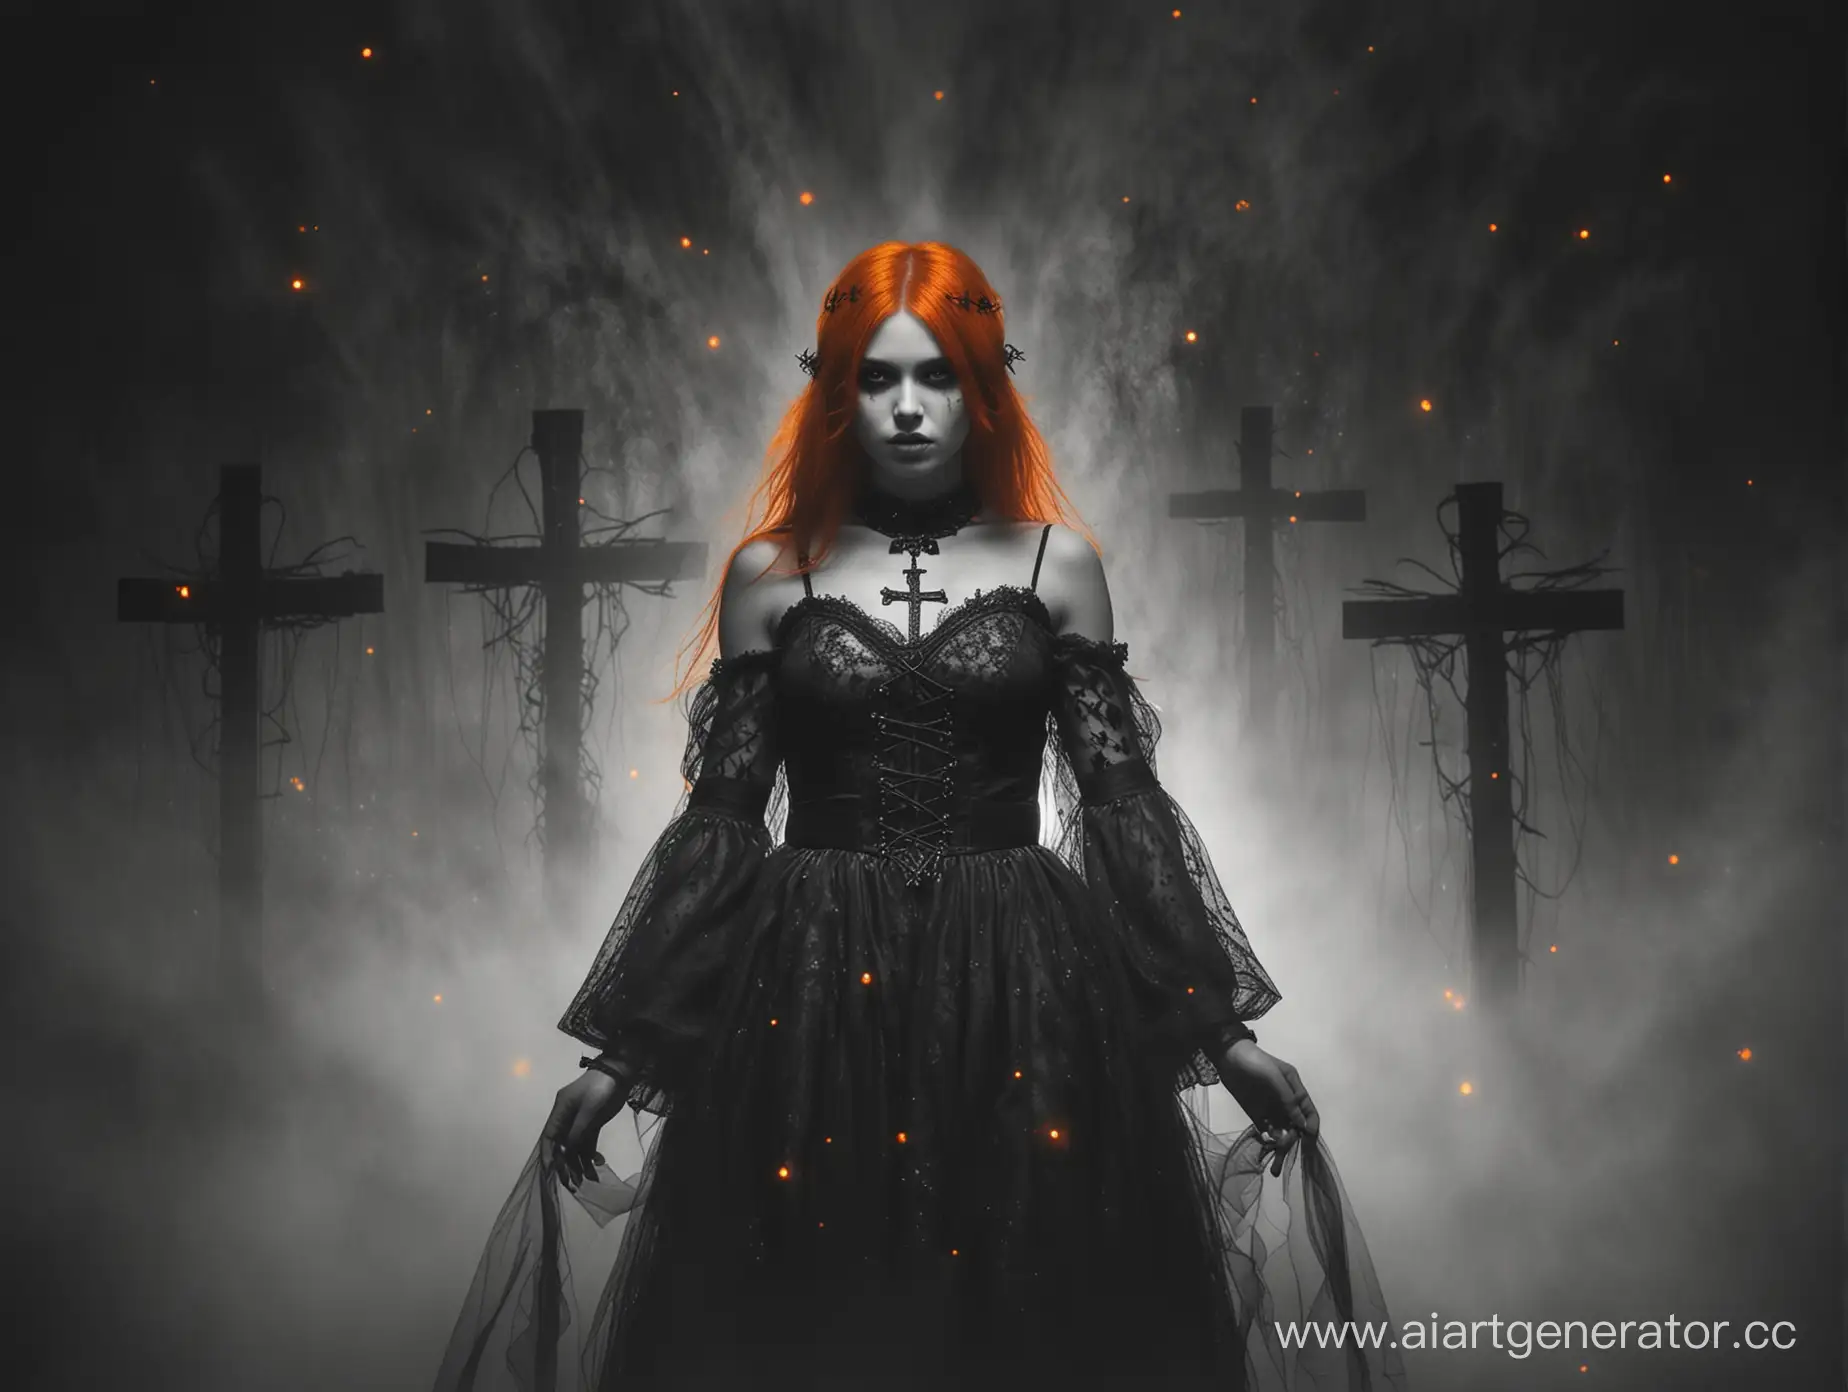 Девушка с оранжевыми глазами с зрачками в виде крестиков с черными светящимися оранжевым волосами в бело-черном платье с оранжевыми вставками, стоит в центре оранжевого тумана, в темных тонах, в стиле темного фэнтези.